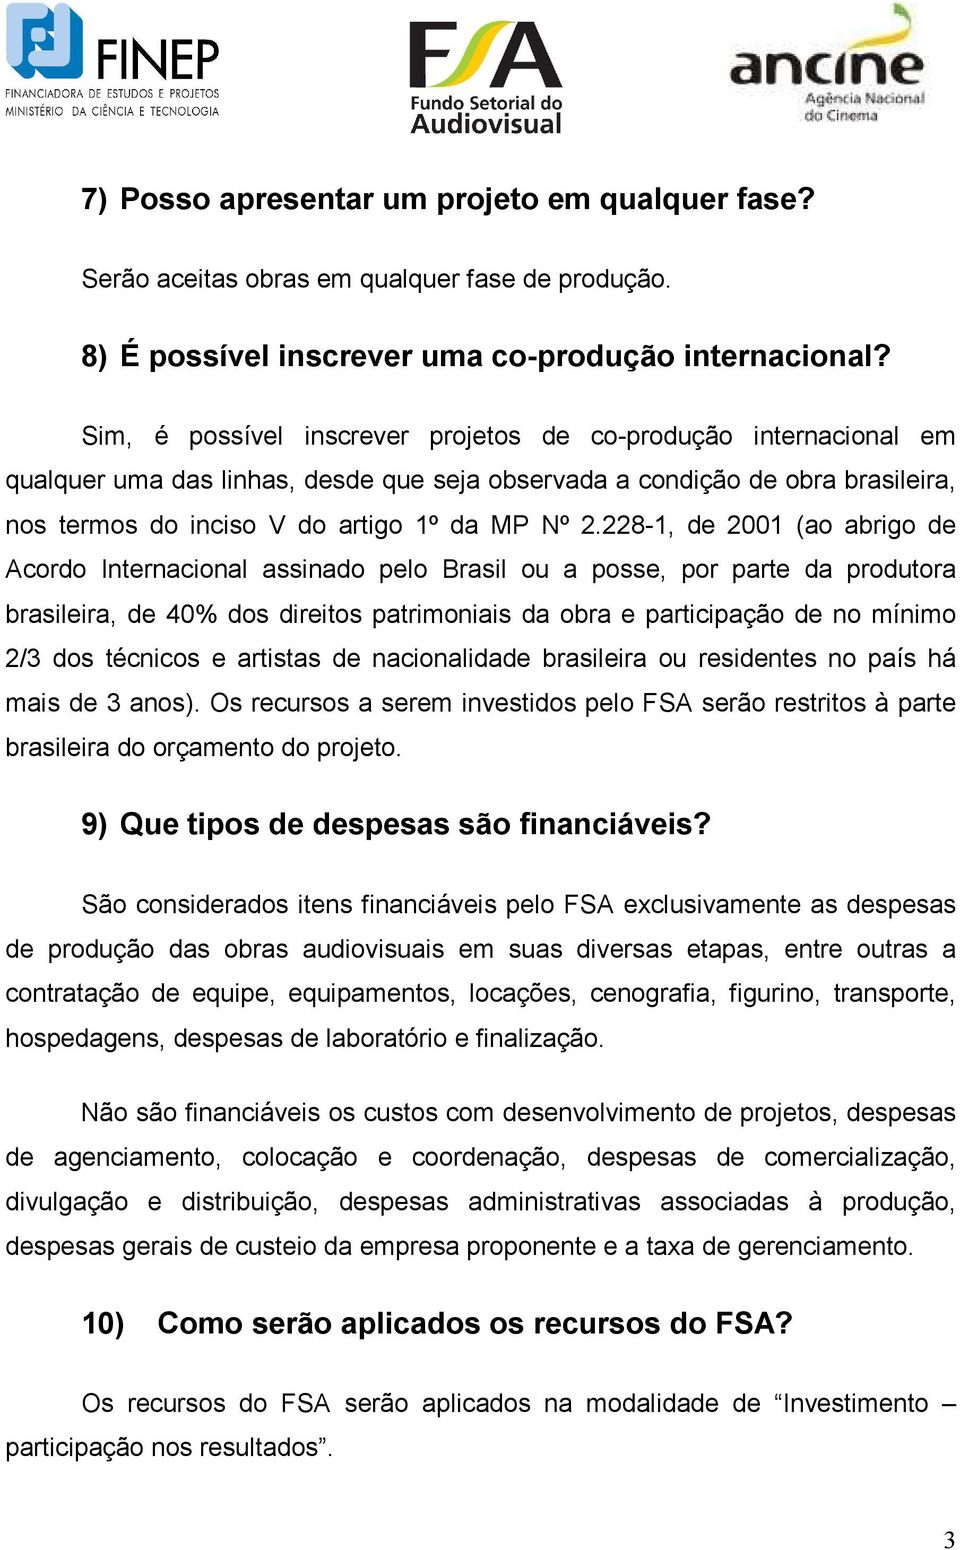 228-1, de 2001 (ao abrigo de Acordo Internacional assinado pelo Brasil ou a posse, por parte da produtora brasileira, de 40% dos direitos patrimoniais da obra e participação de no mínimo 2/3 dos